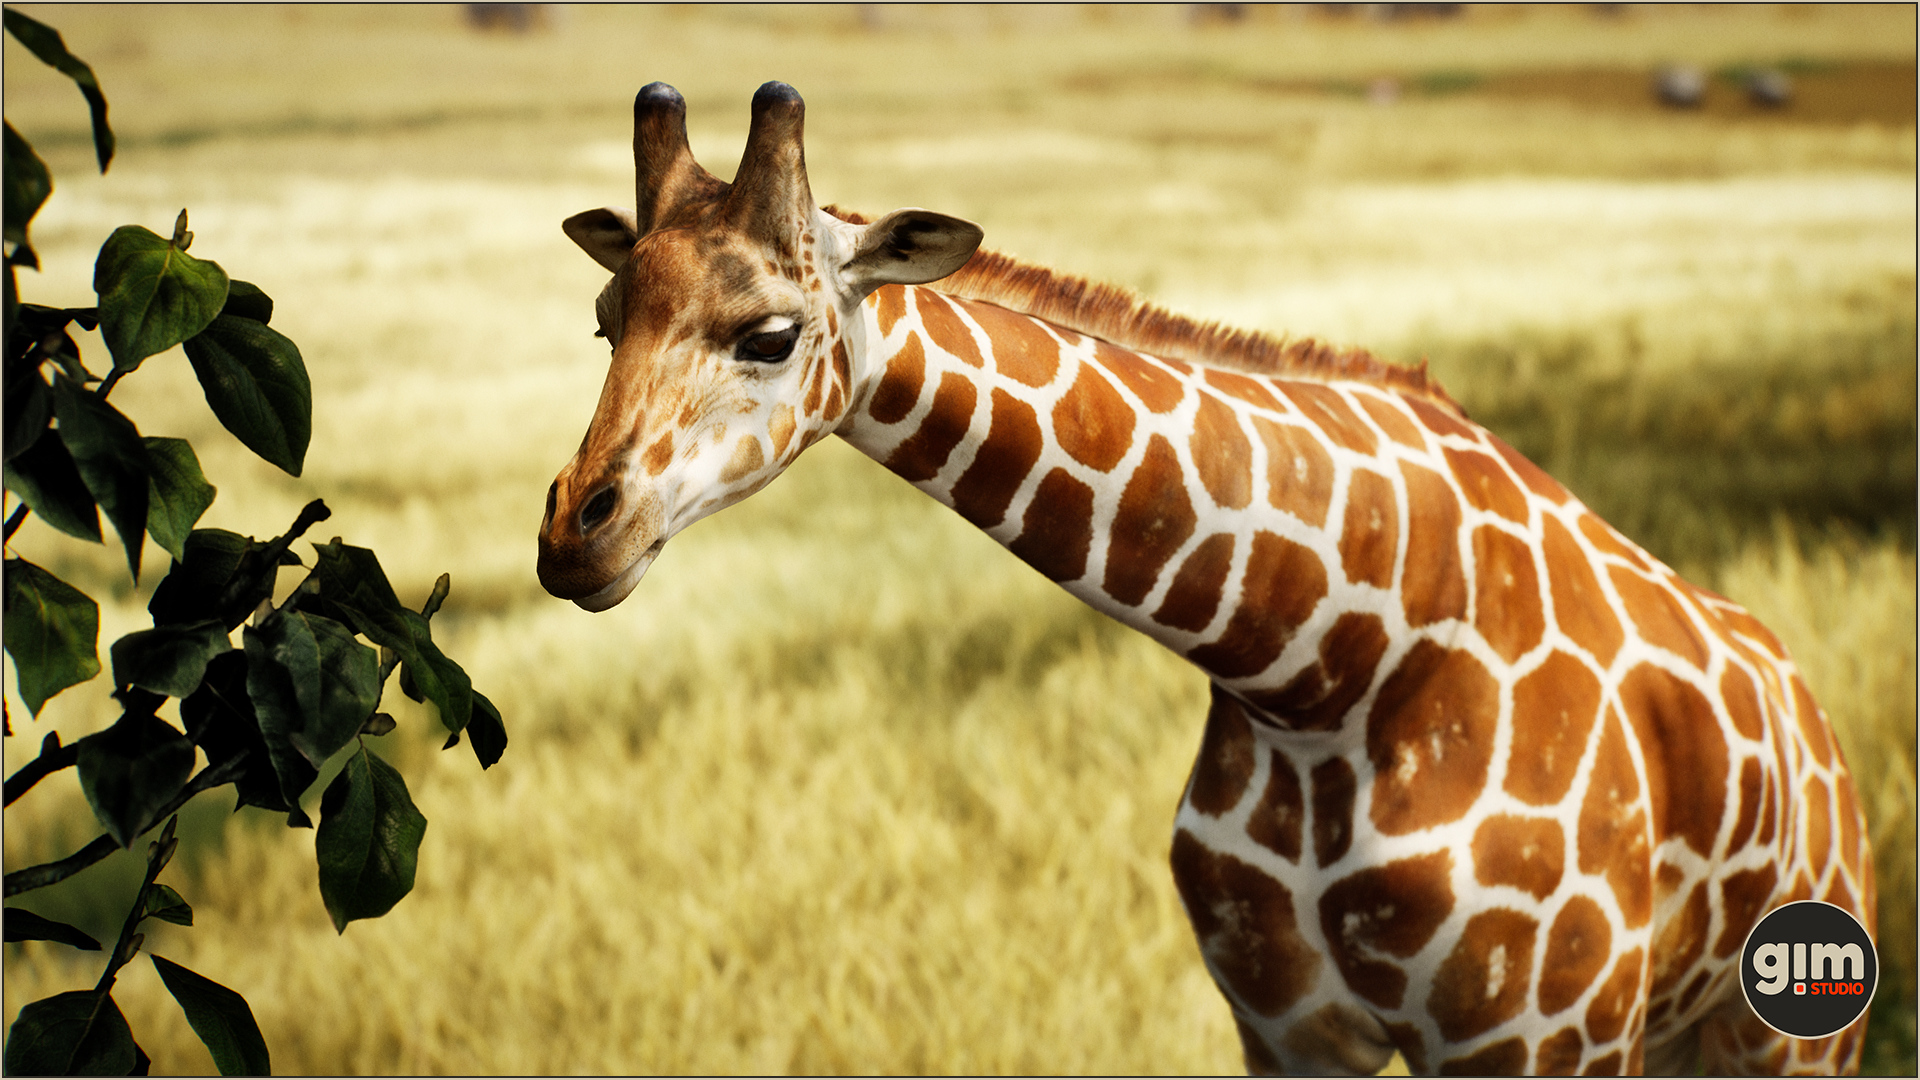 Male giraffe eating.